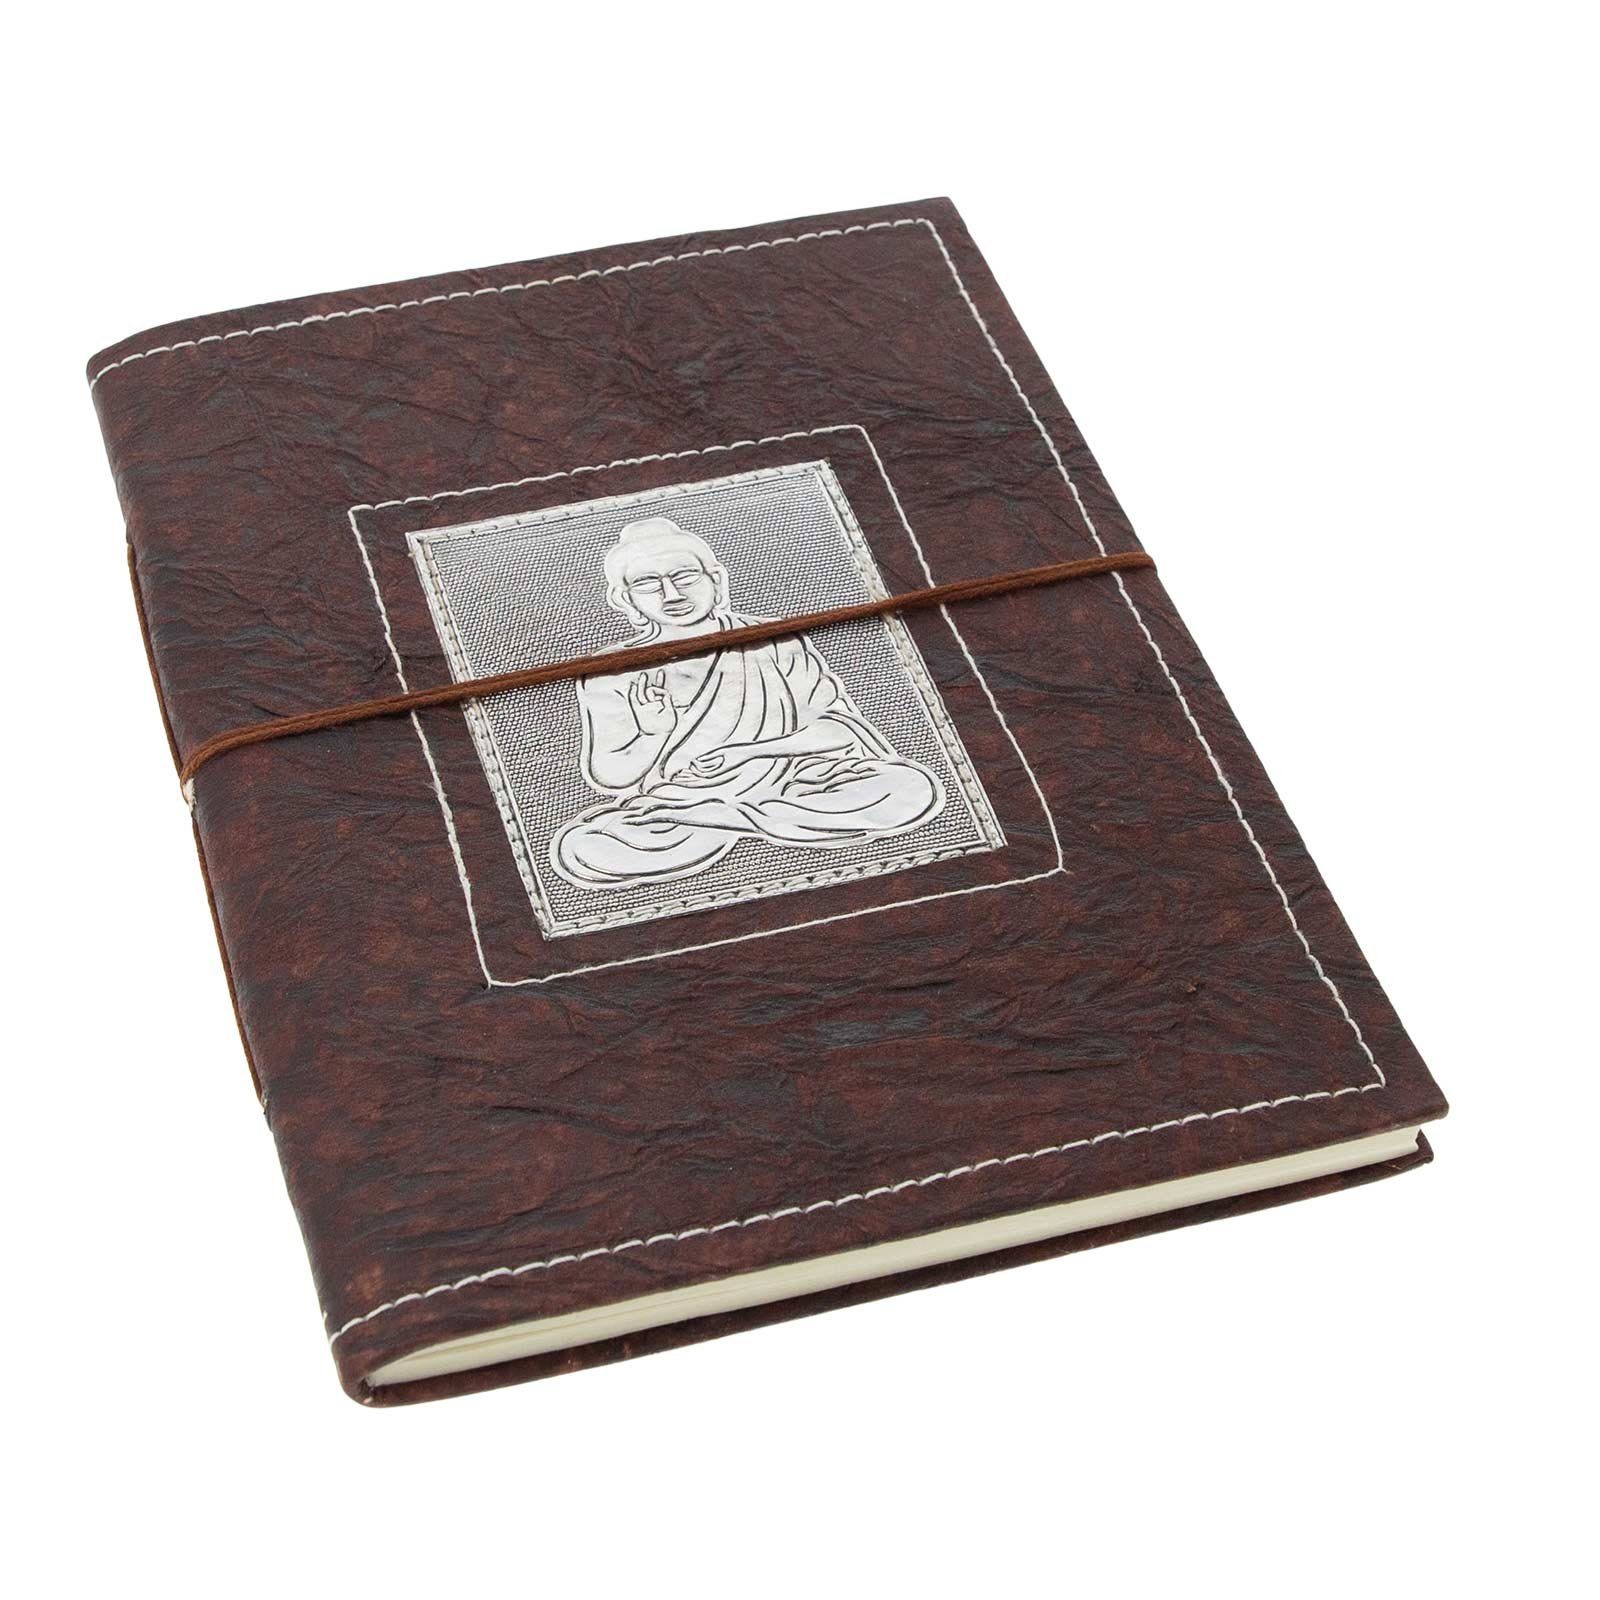 KUNST UND MAGIE Notizbuch Buddha handgefertigt-Geprägtes Poesiealbum Notizbuch 20x15cm Tagebuch